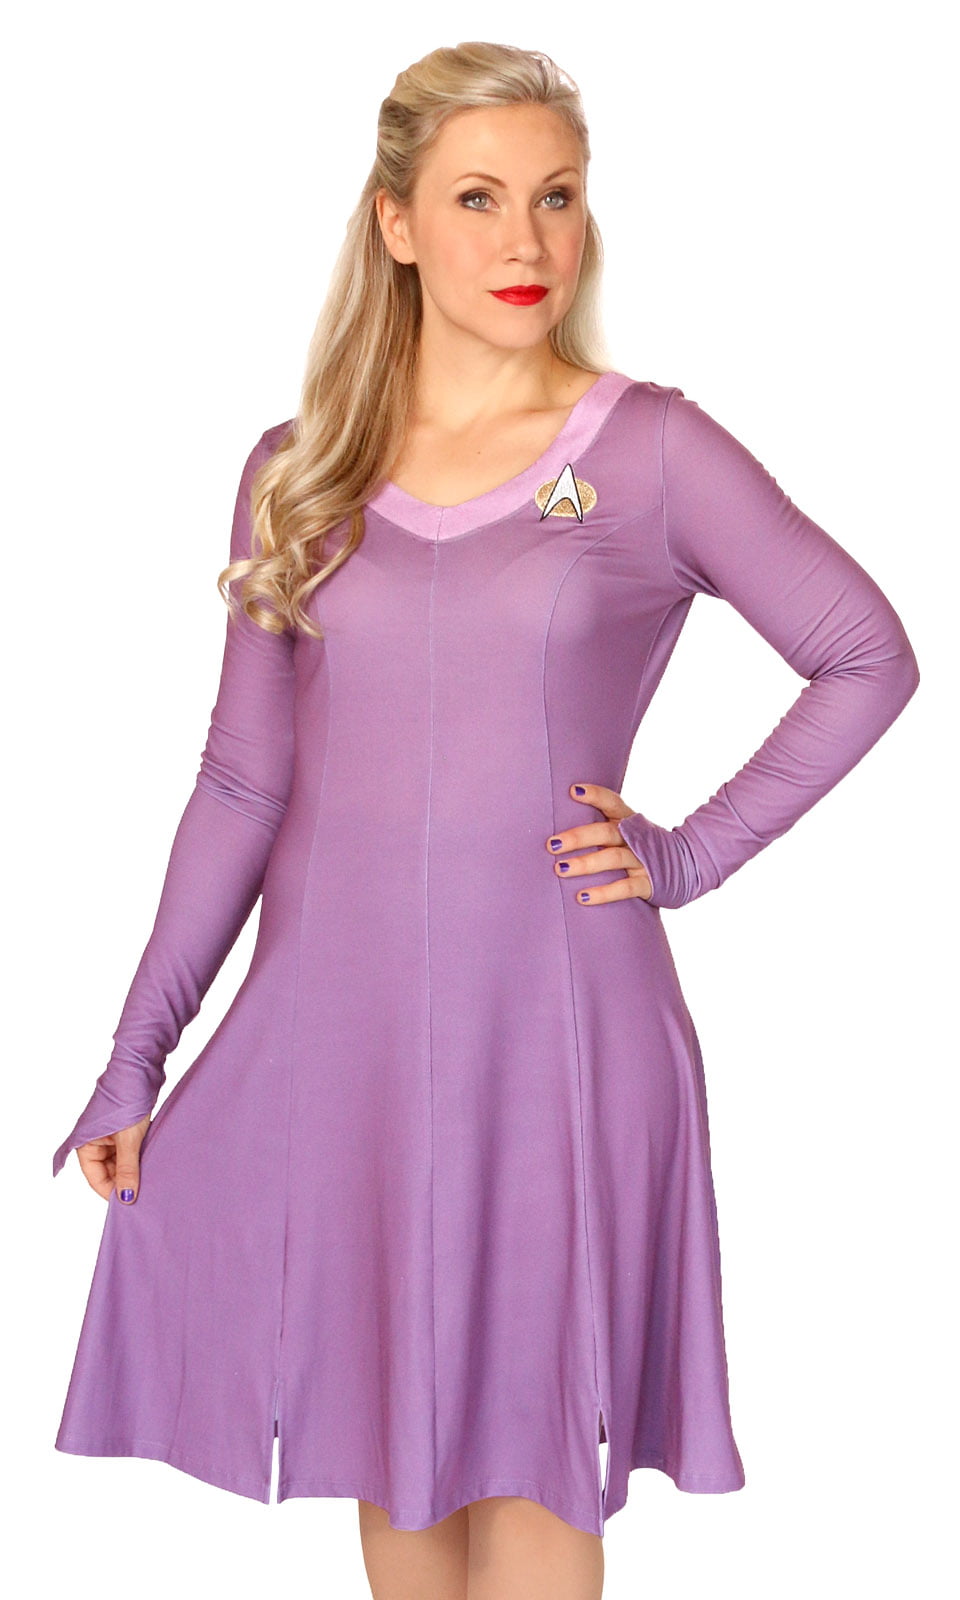 Star Trek Star Trek Deanna Troi Women S Costume Dress